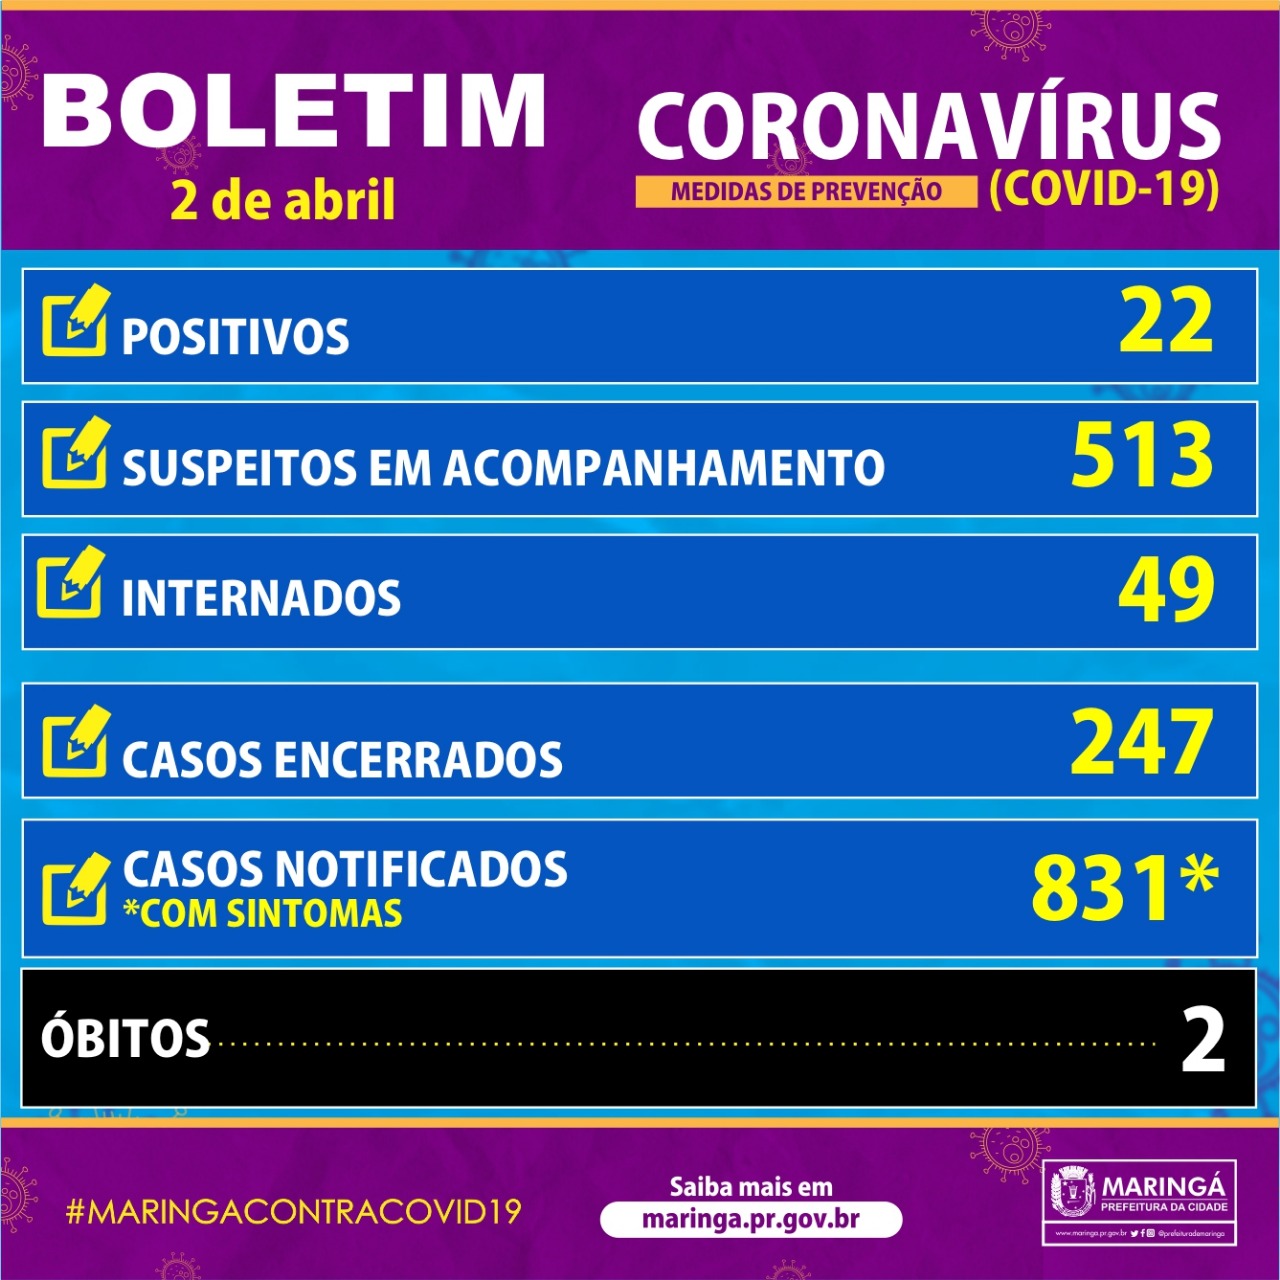 Boletim do coronavírus em Maringá de quinta-feira, 2 de abril